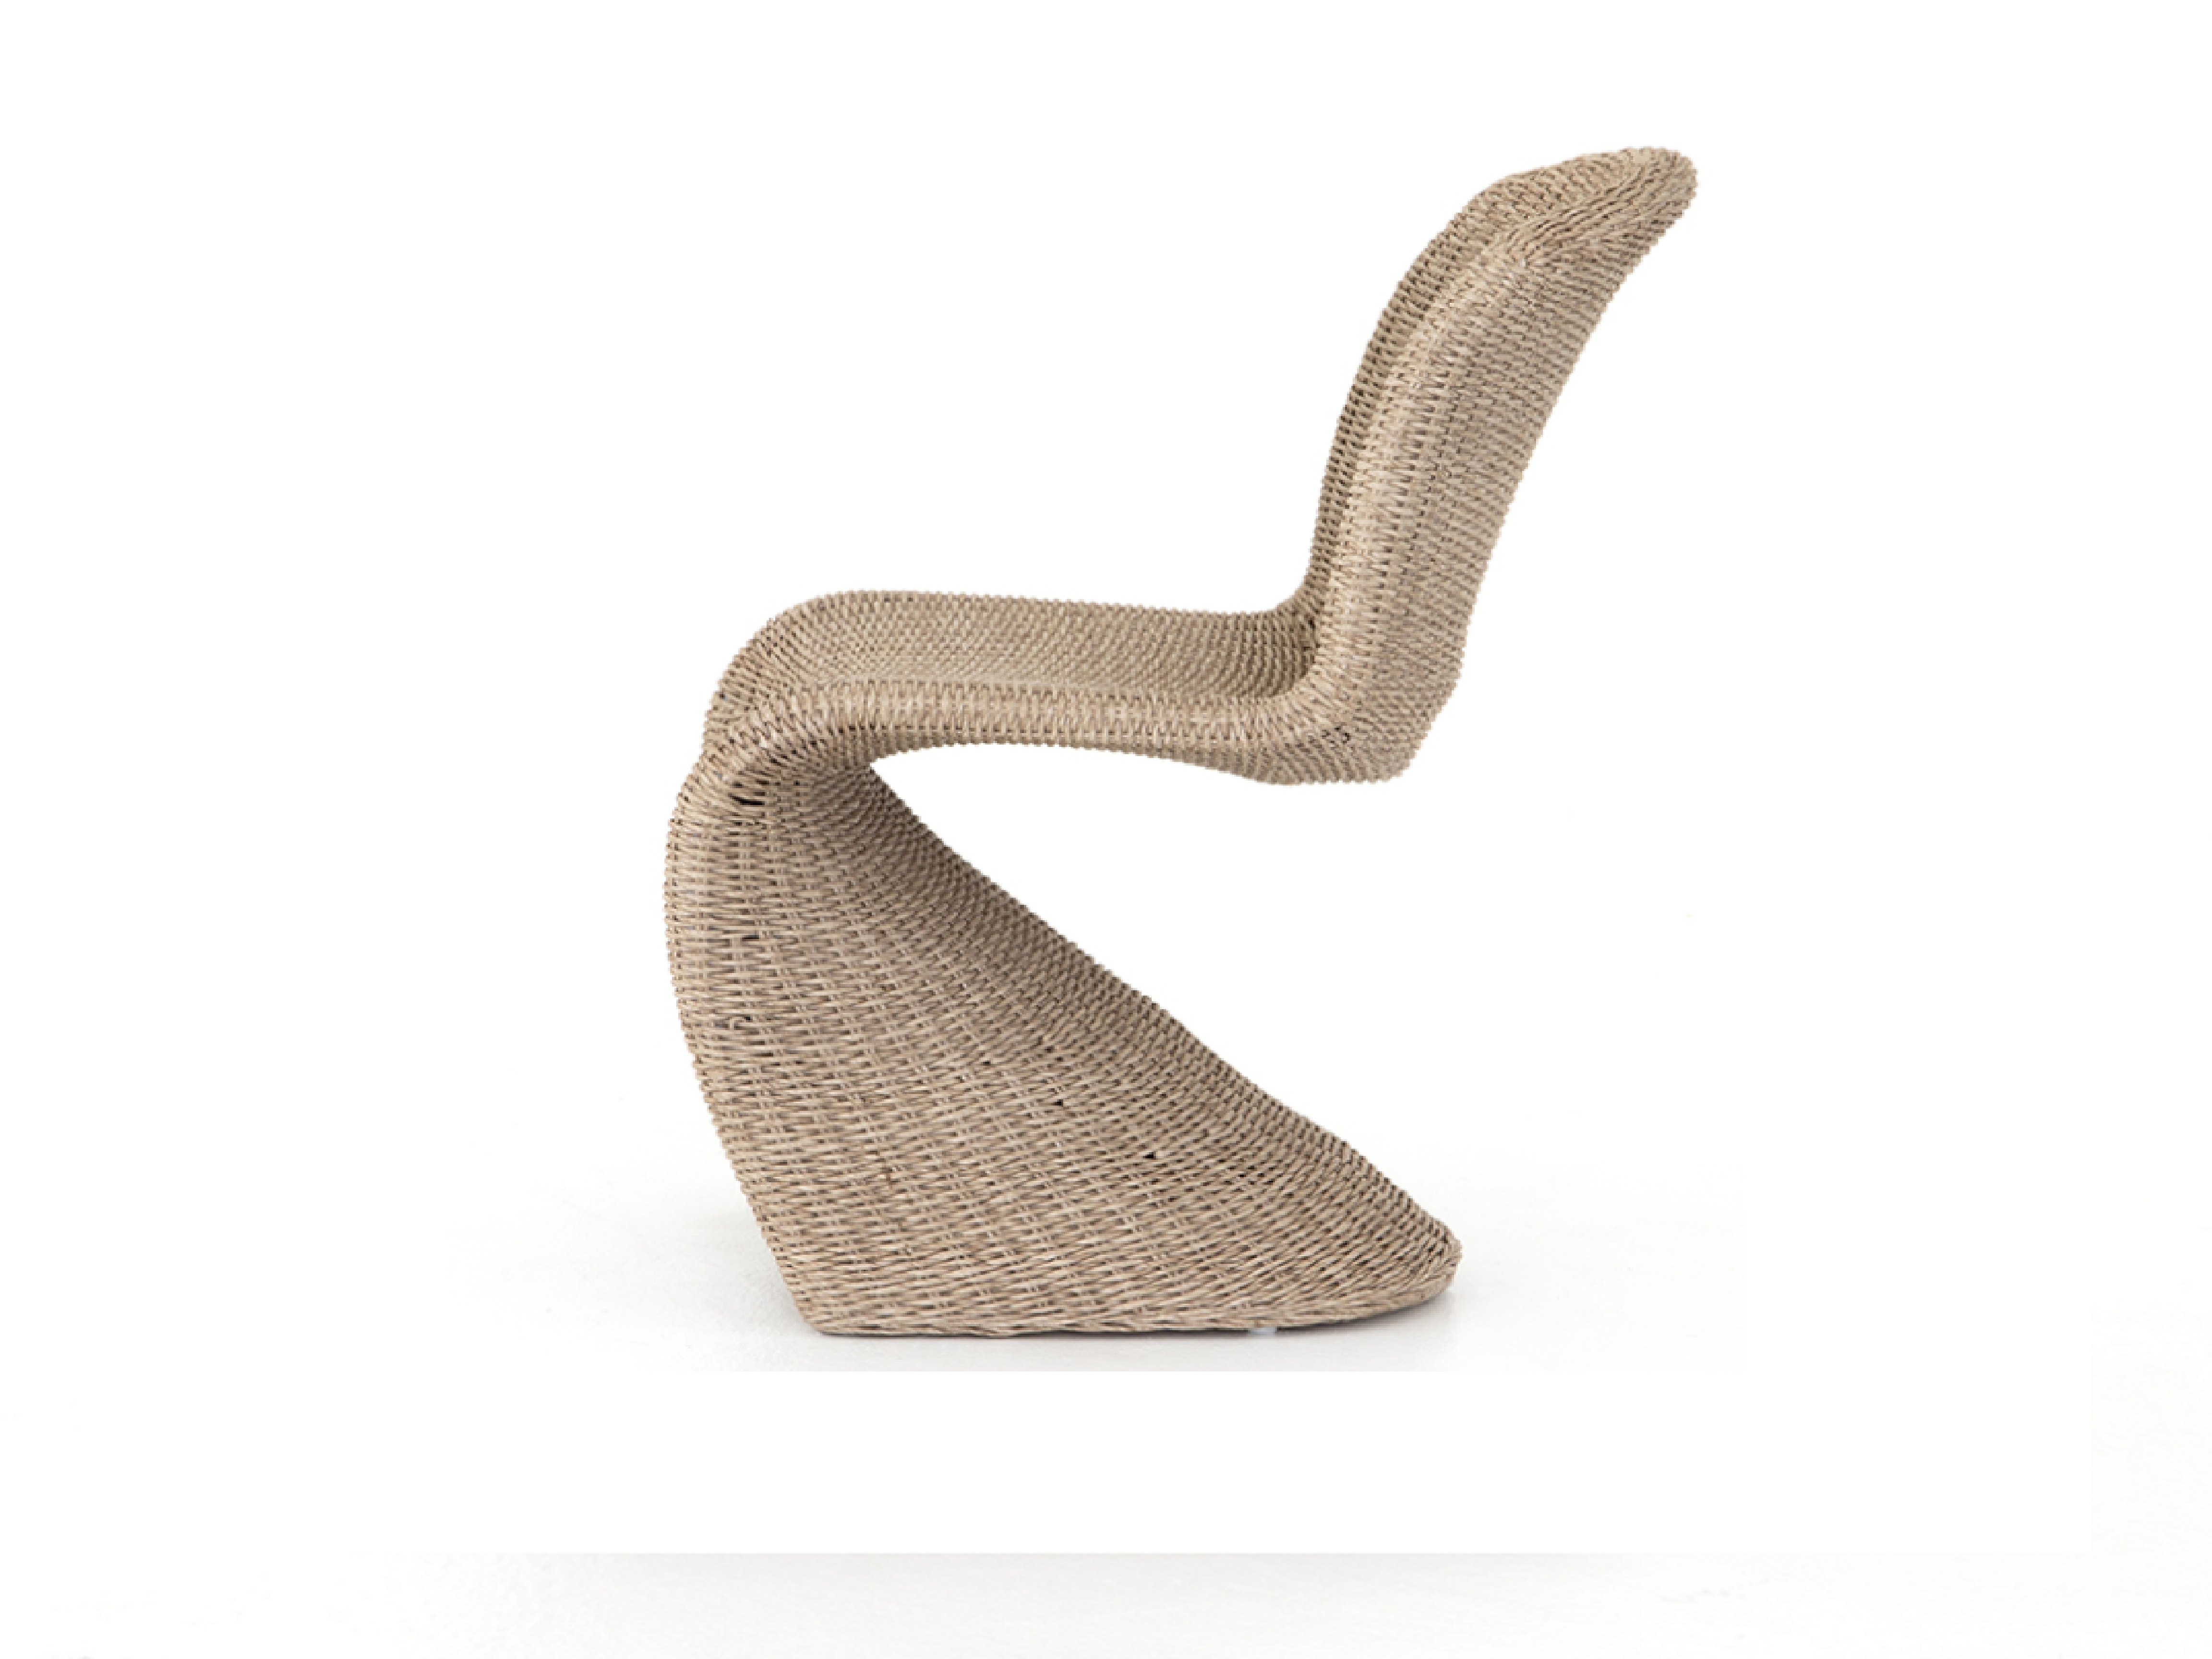 Cane Chair - Modern